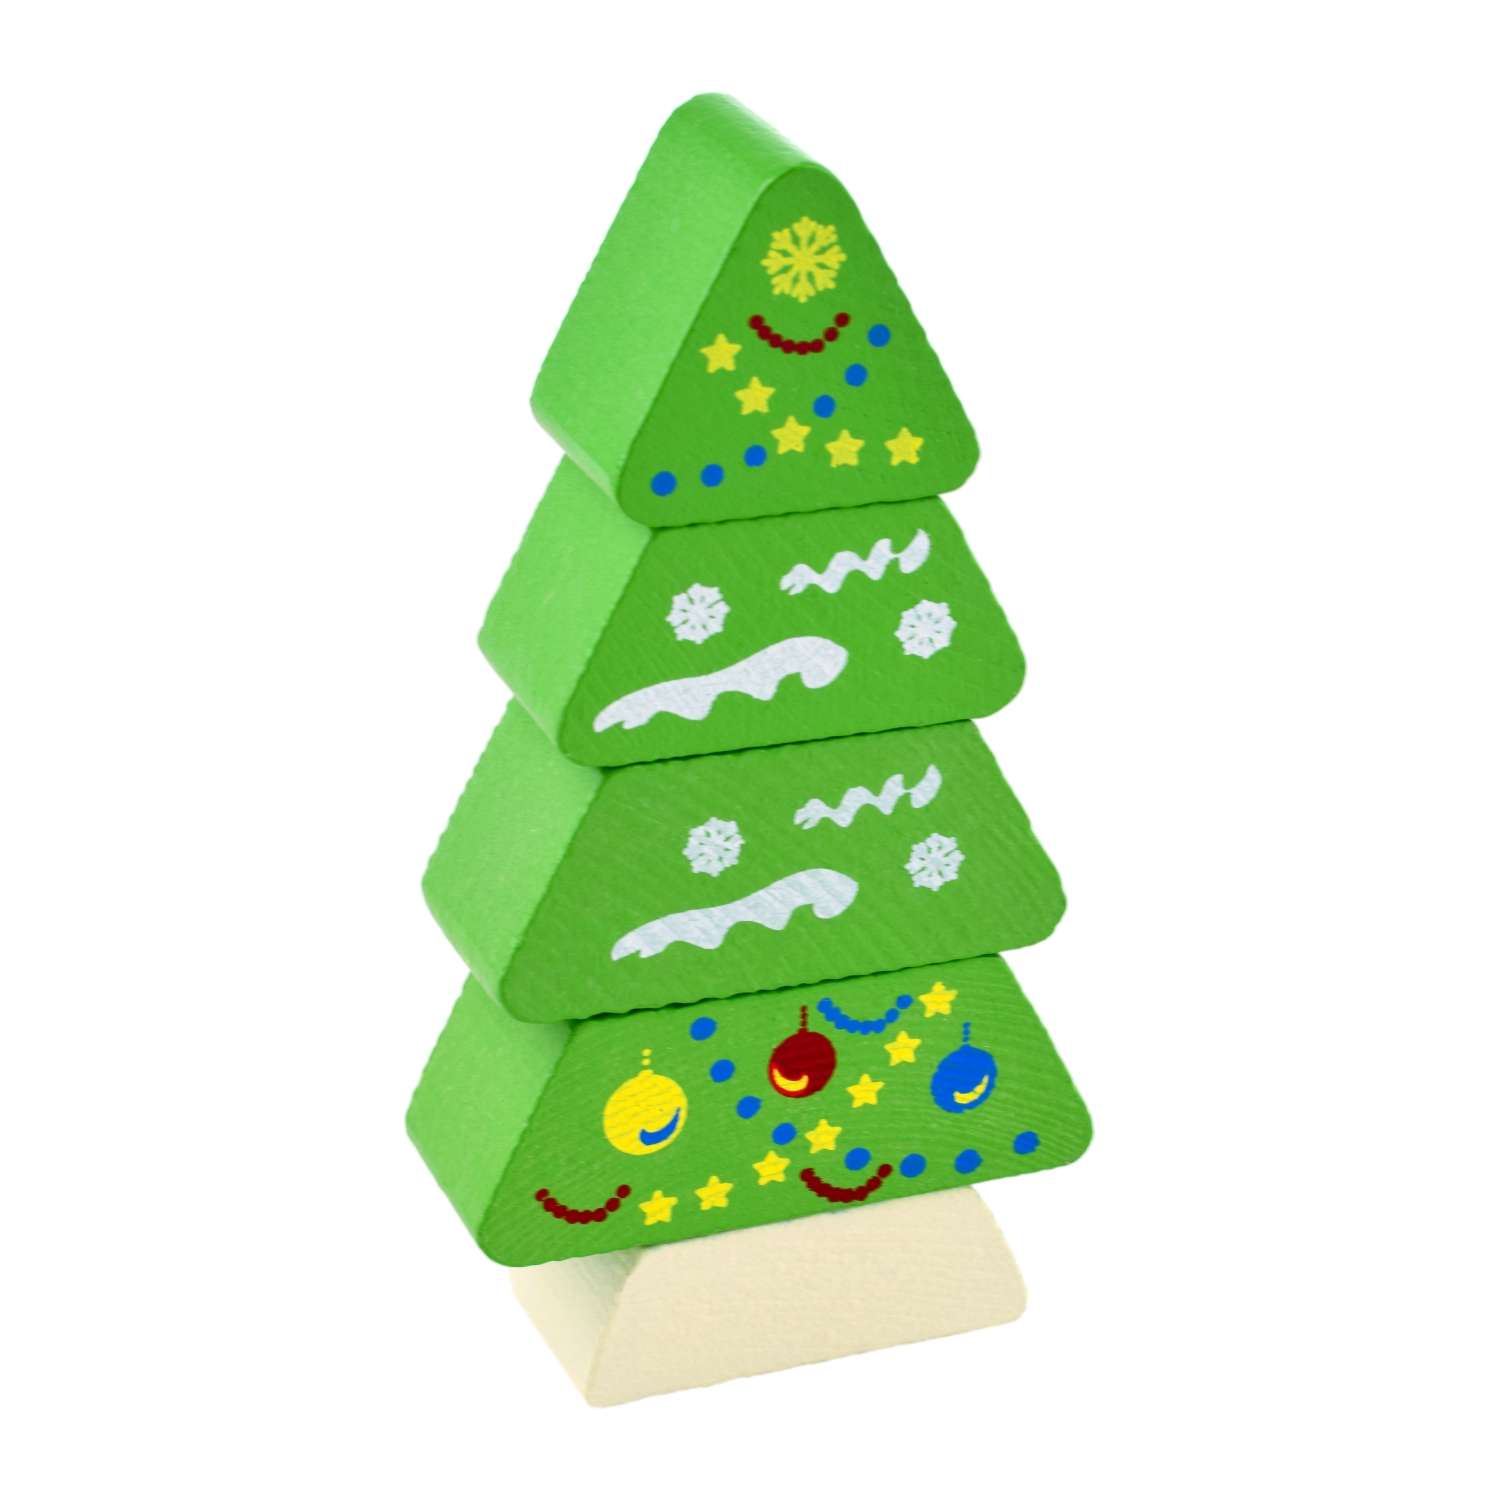 Пирамидка деревянная Томик безосевая развивающая игрушка Ёлочка 5 деталей 512 - фото 1